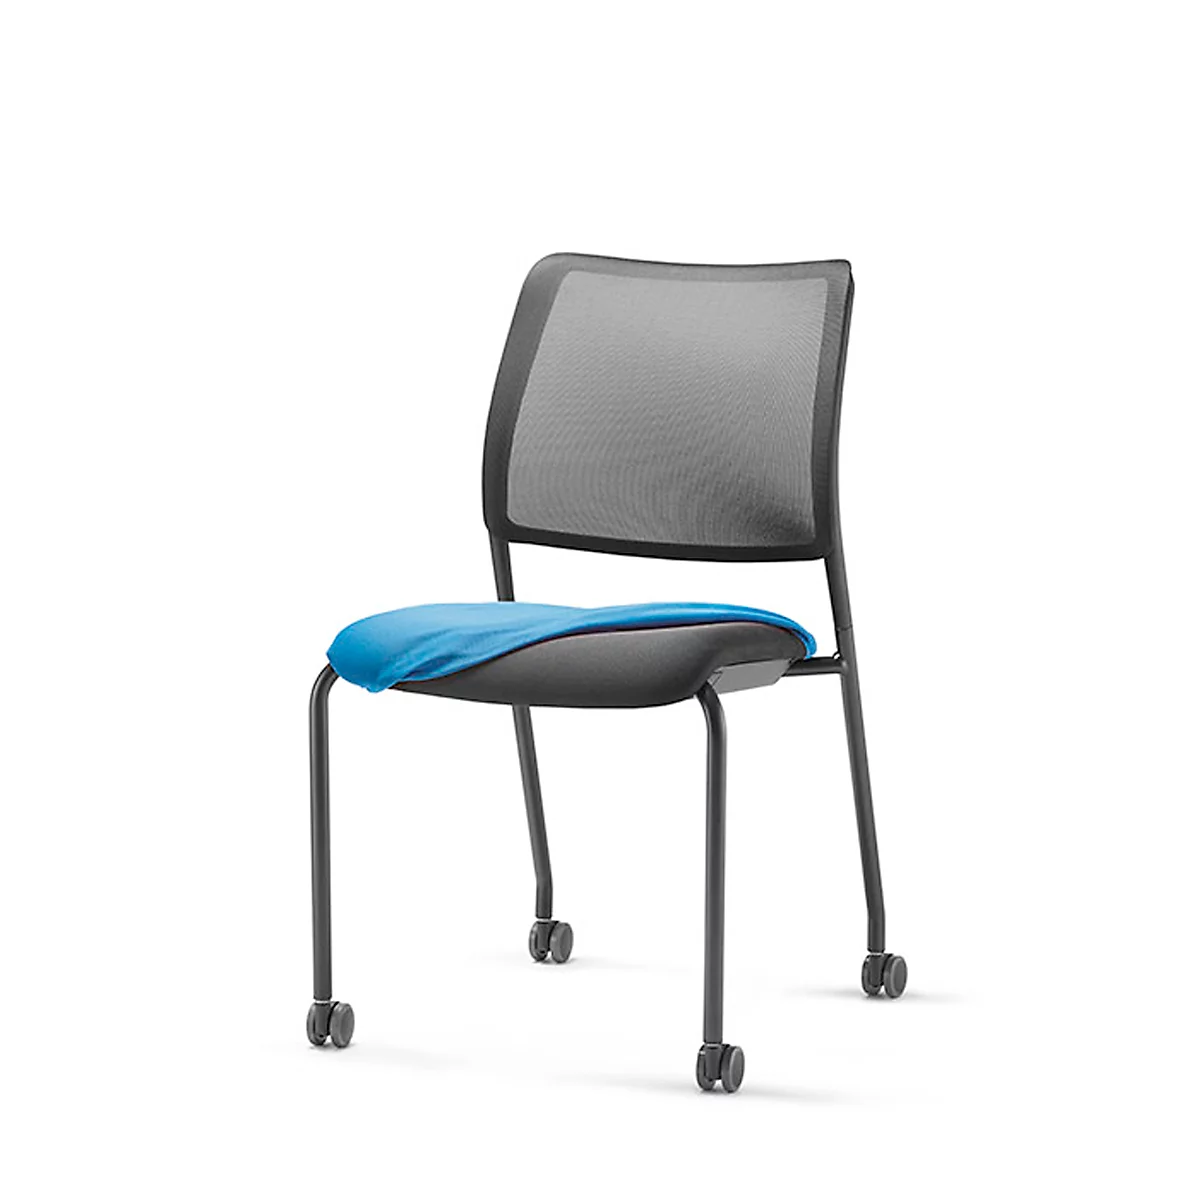 Funda para silla, para silla para visitas to-sync meet, reequipable, azul celeste